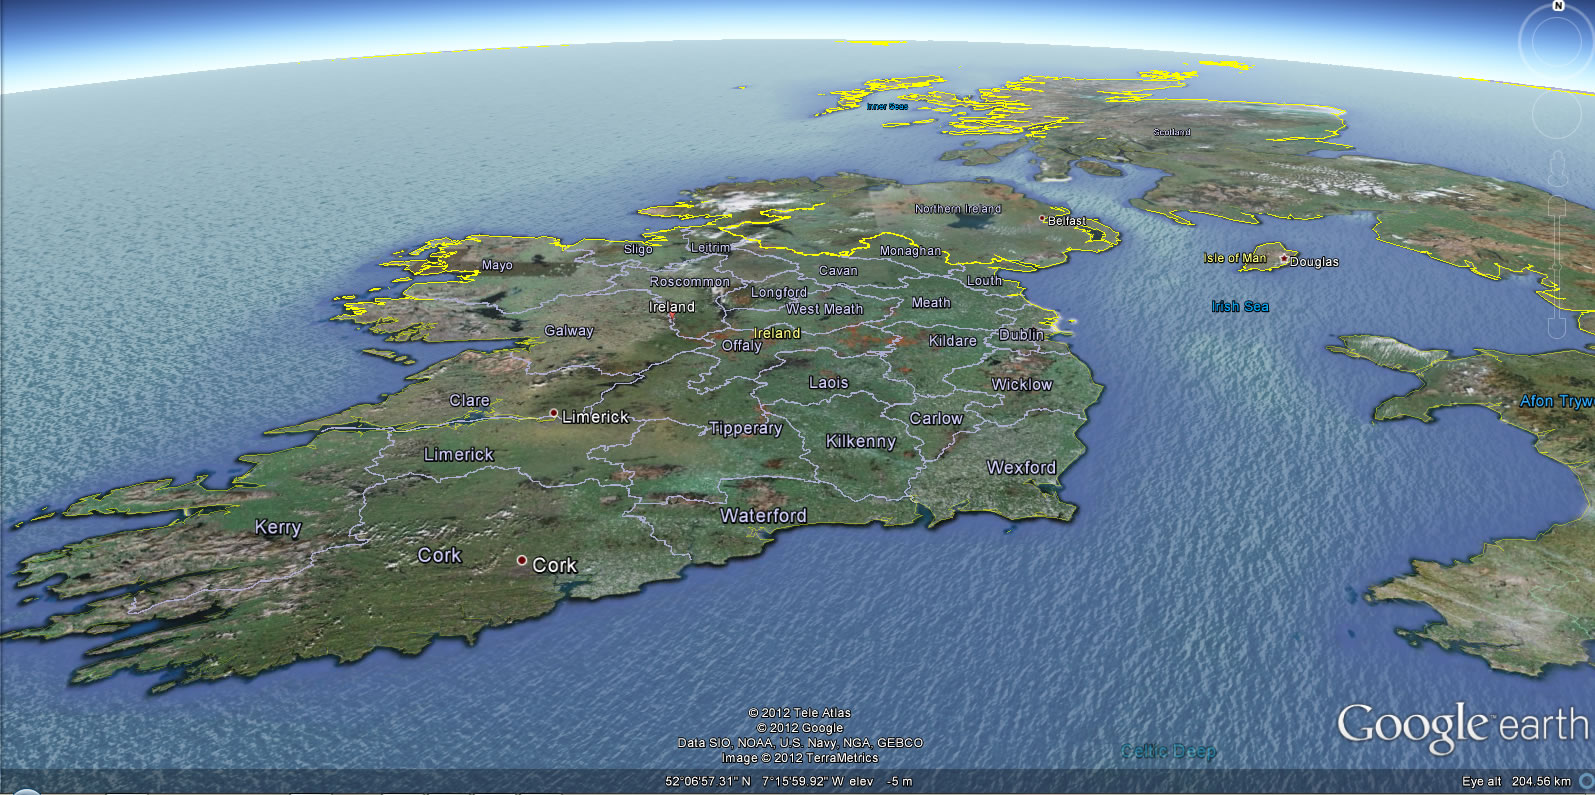 irlanda yerkure haritasi